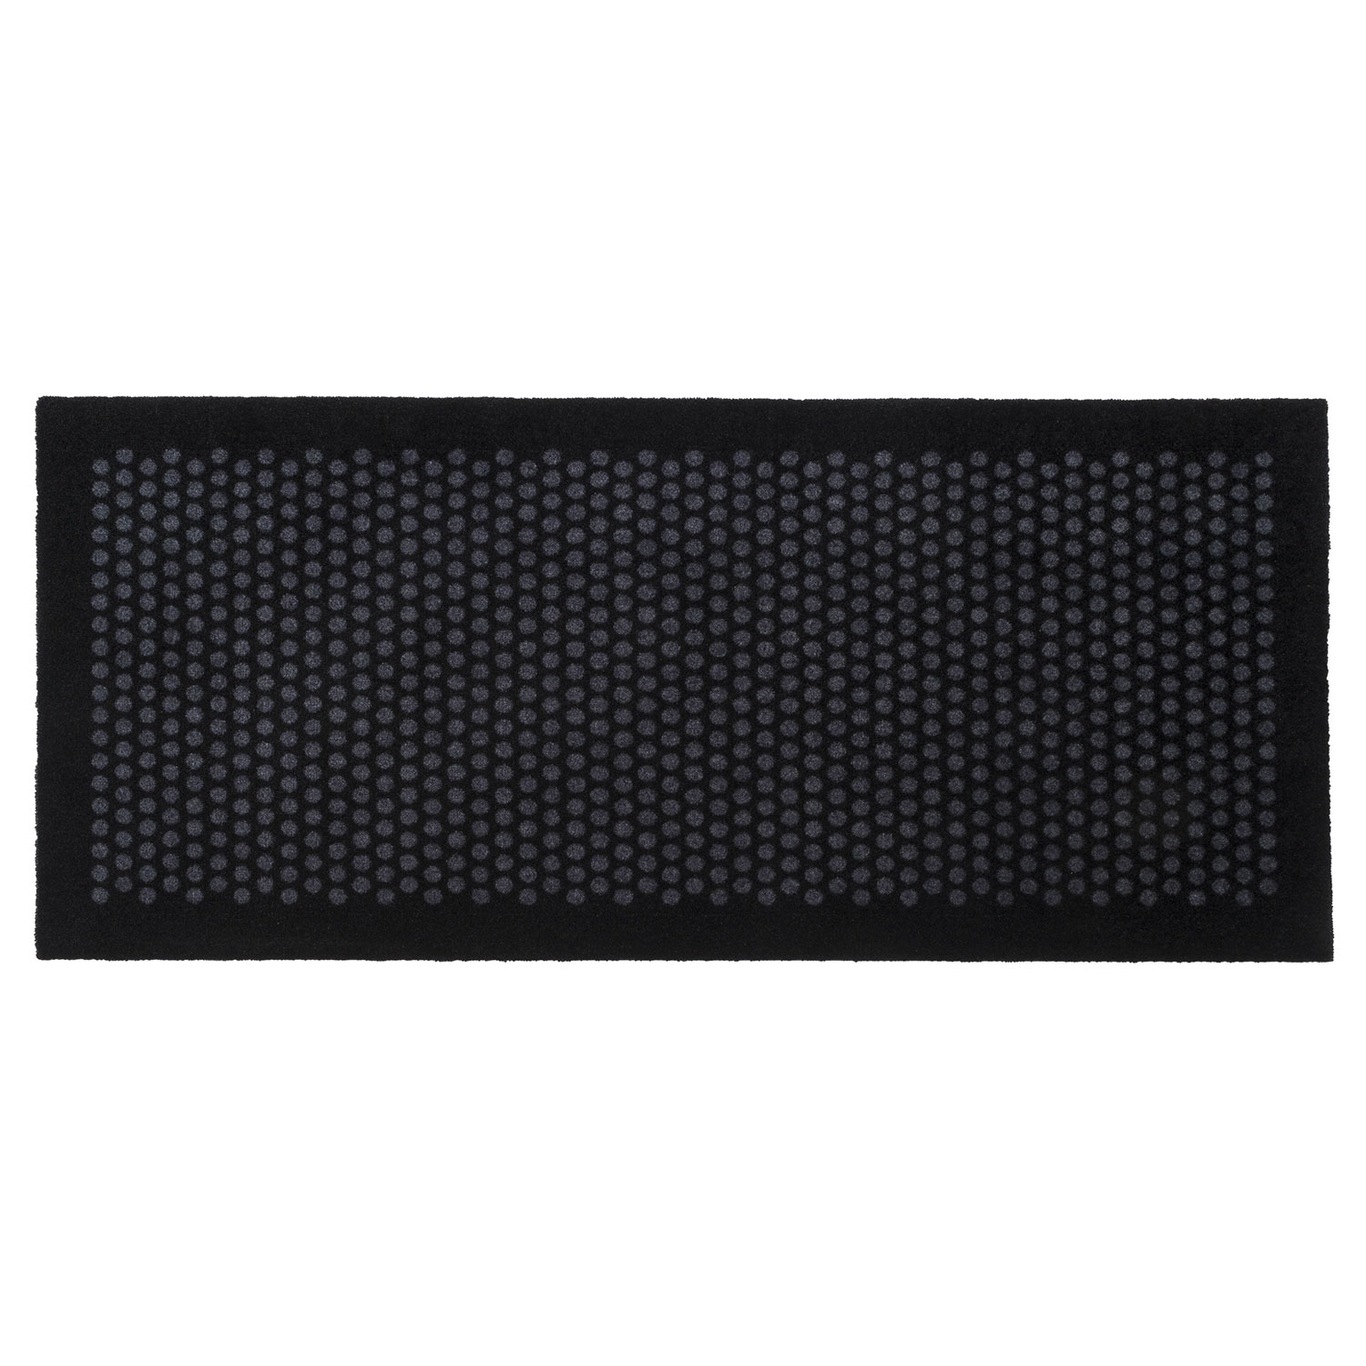 Dot Doormat 67x150cm, Black/Grey